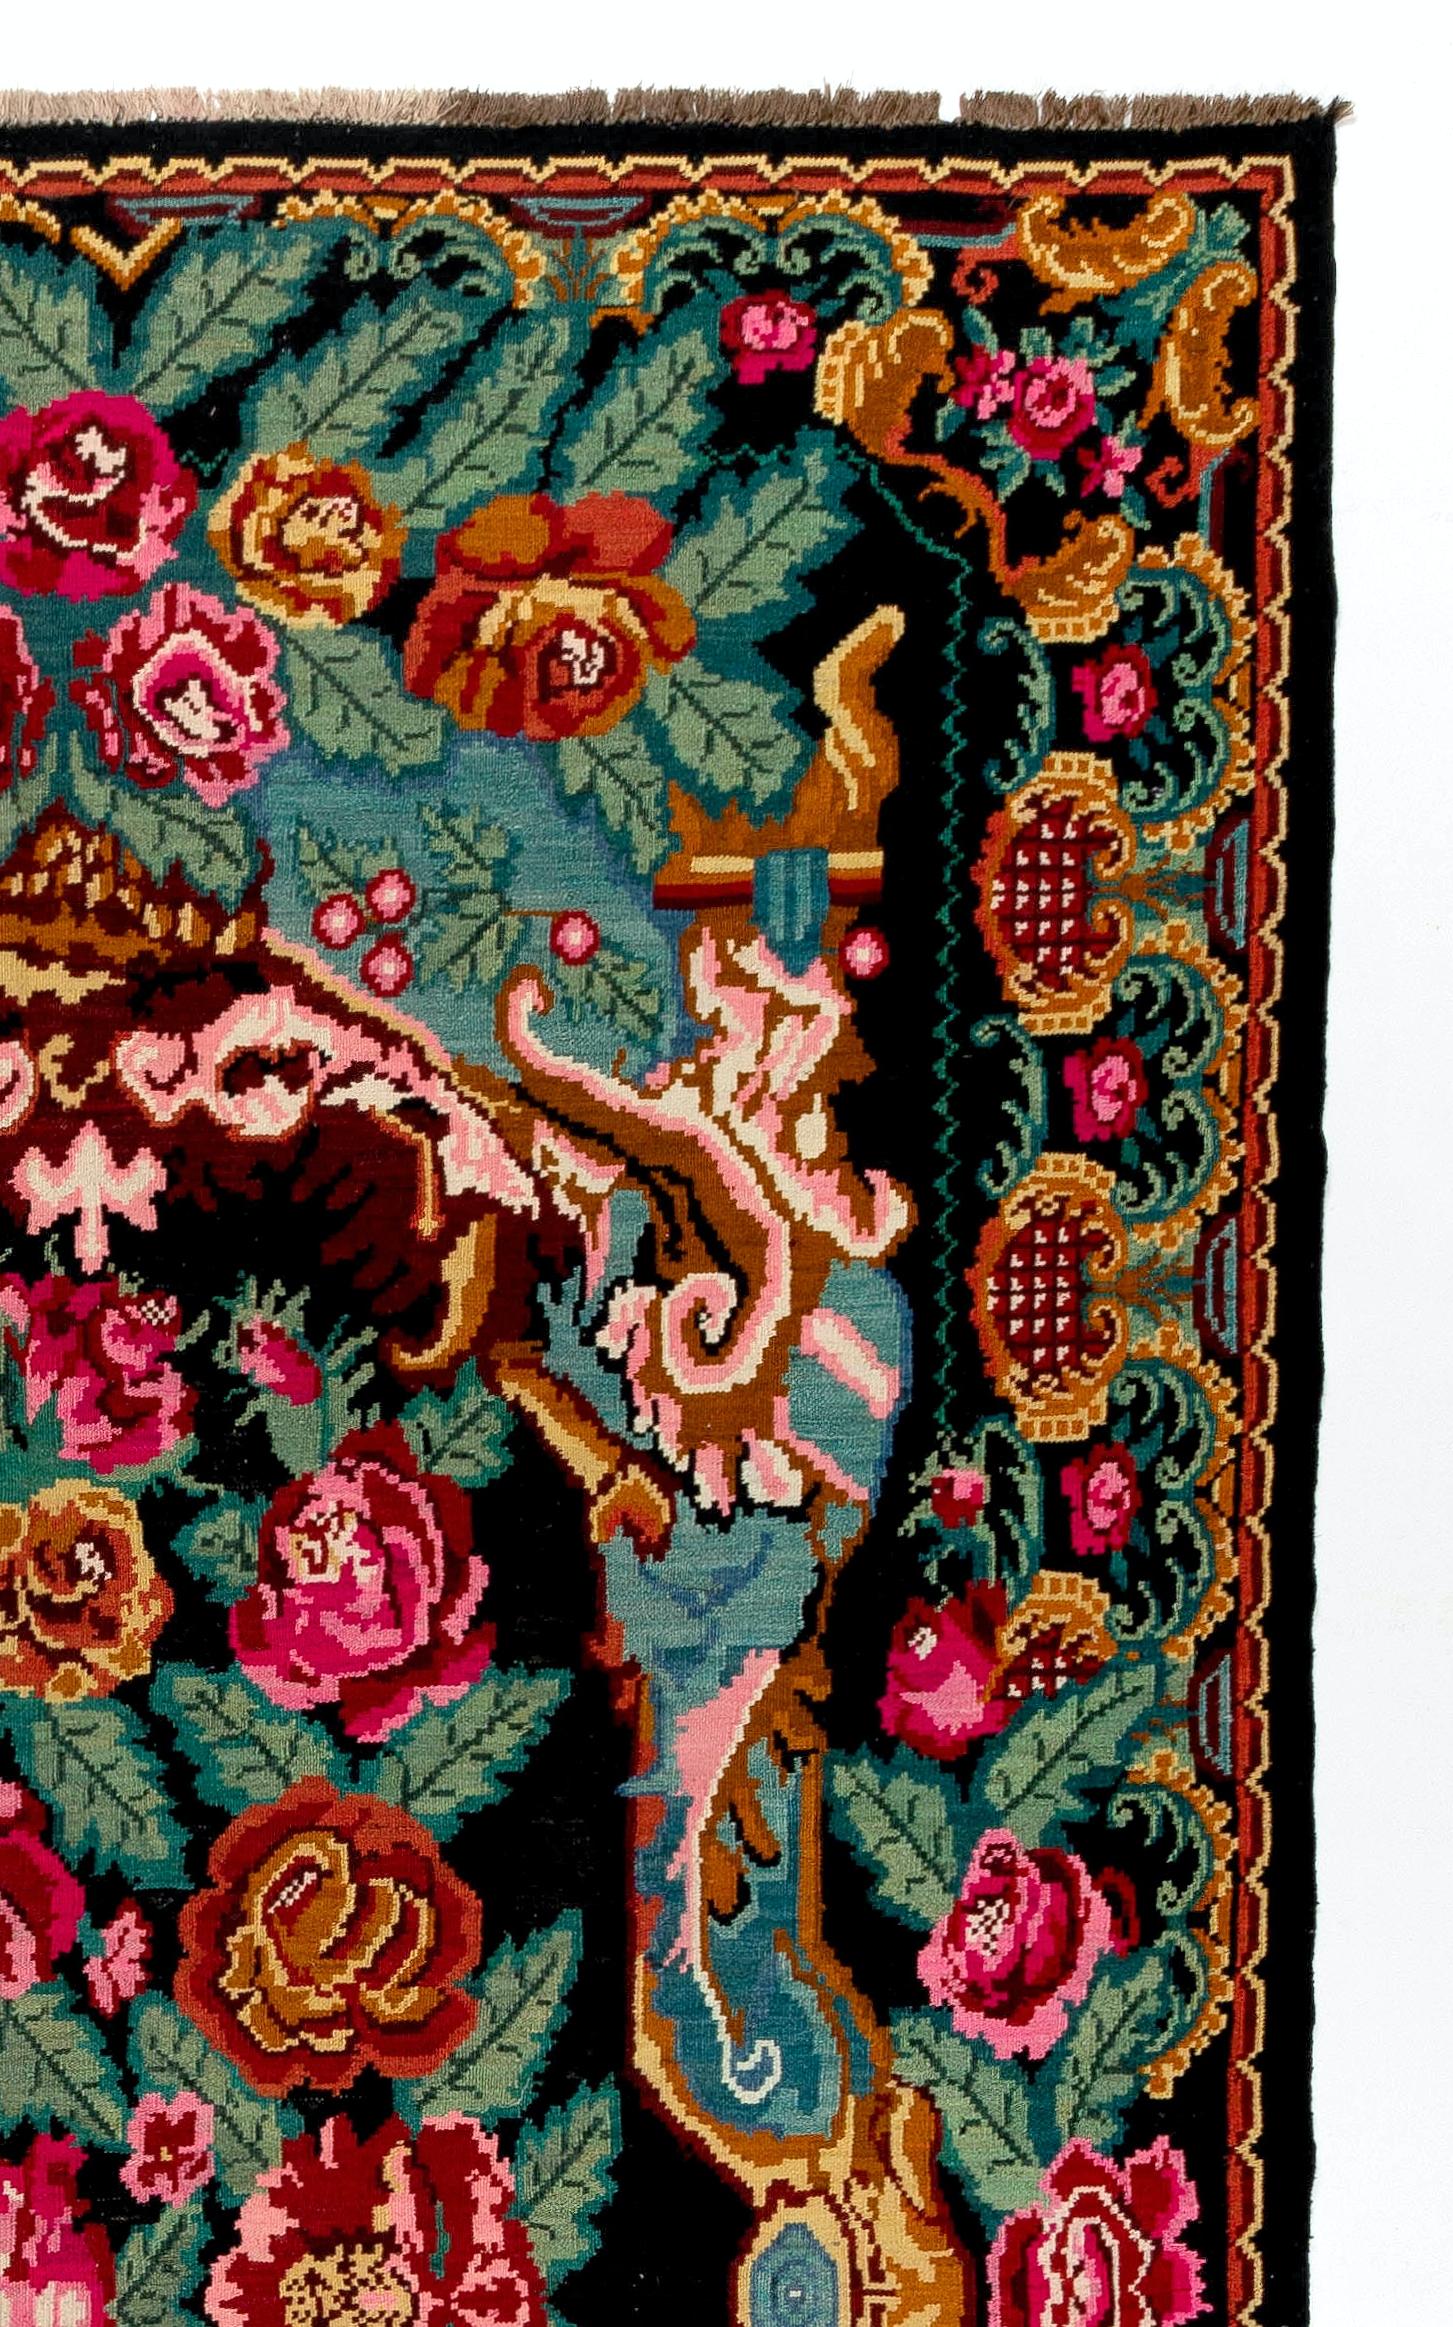 Einzigartiger Kelim aus Bessarabien. Maße: 7.2x11.6 Ft.
Ein handgewebter osteuropäischer Teppich aus Moldawien. Diese traditionellen moldauischen Flachgewebe sind von alten Aubusson-Teppichen inspiriert, zeichnen sich jedoch durch ihren schwarzen